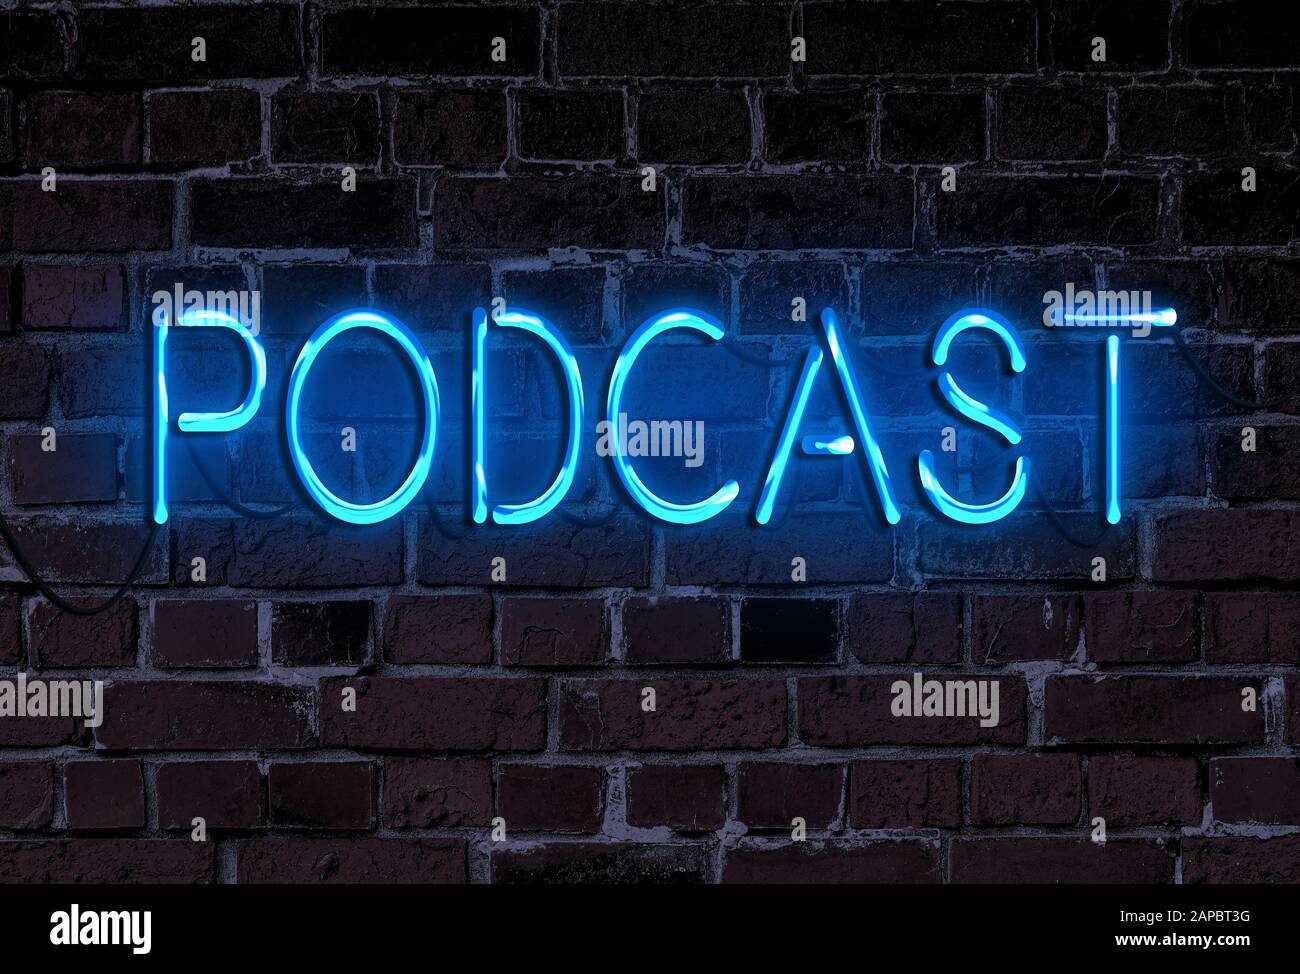 Podcast de mot dans des lettres néon illuminées sur un mur de briques rugueuses, enregistrement de podcasting signe néon Banque D'Images